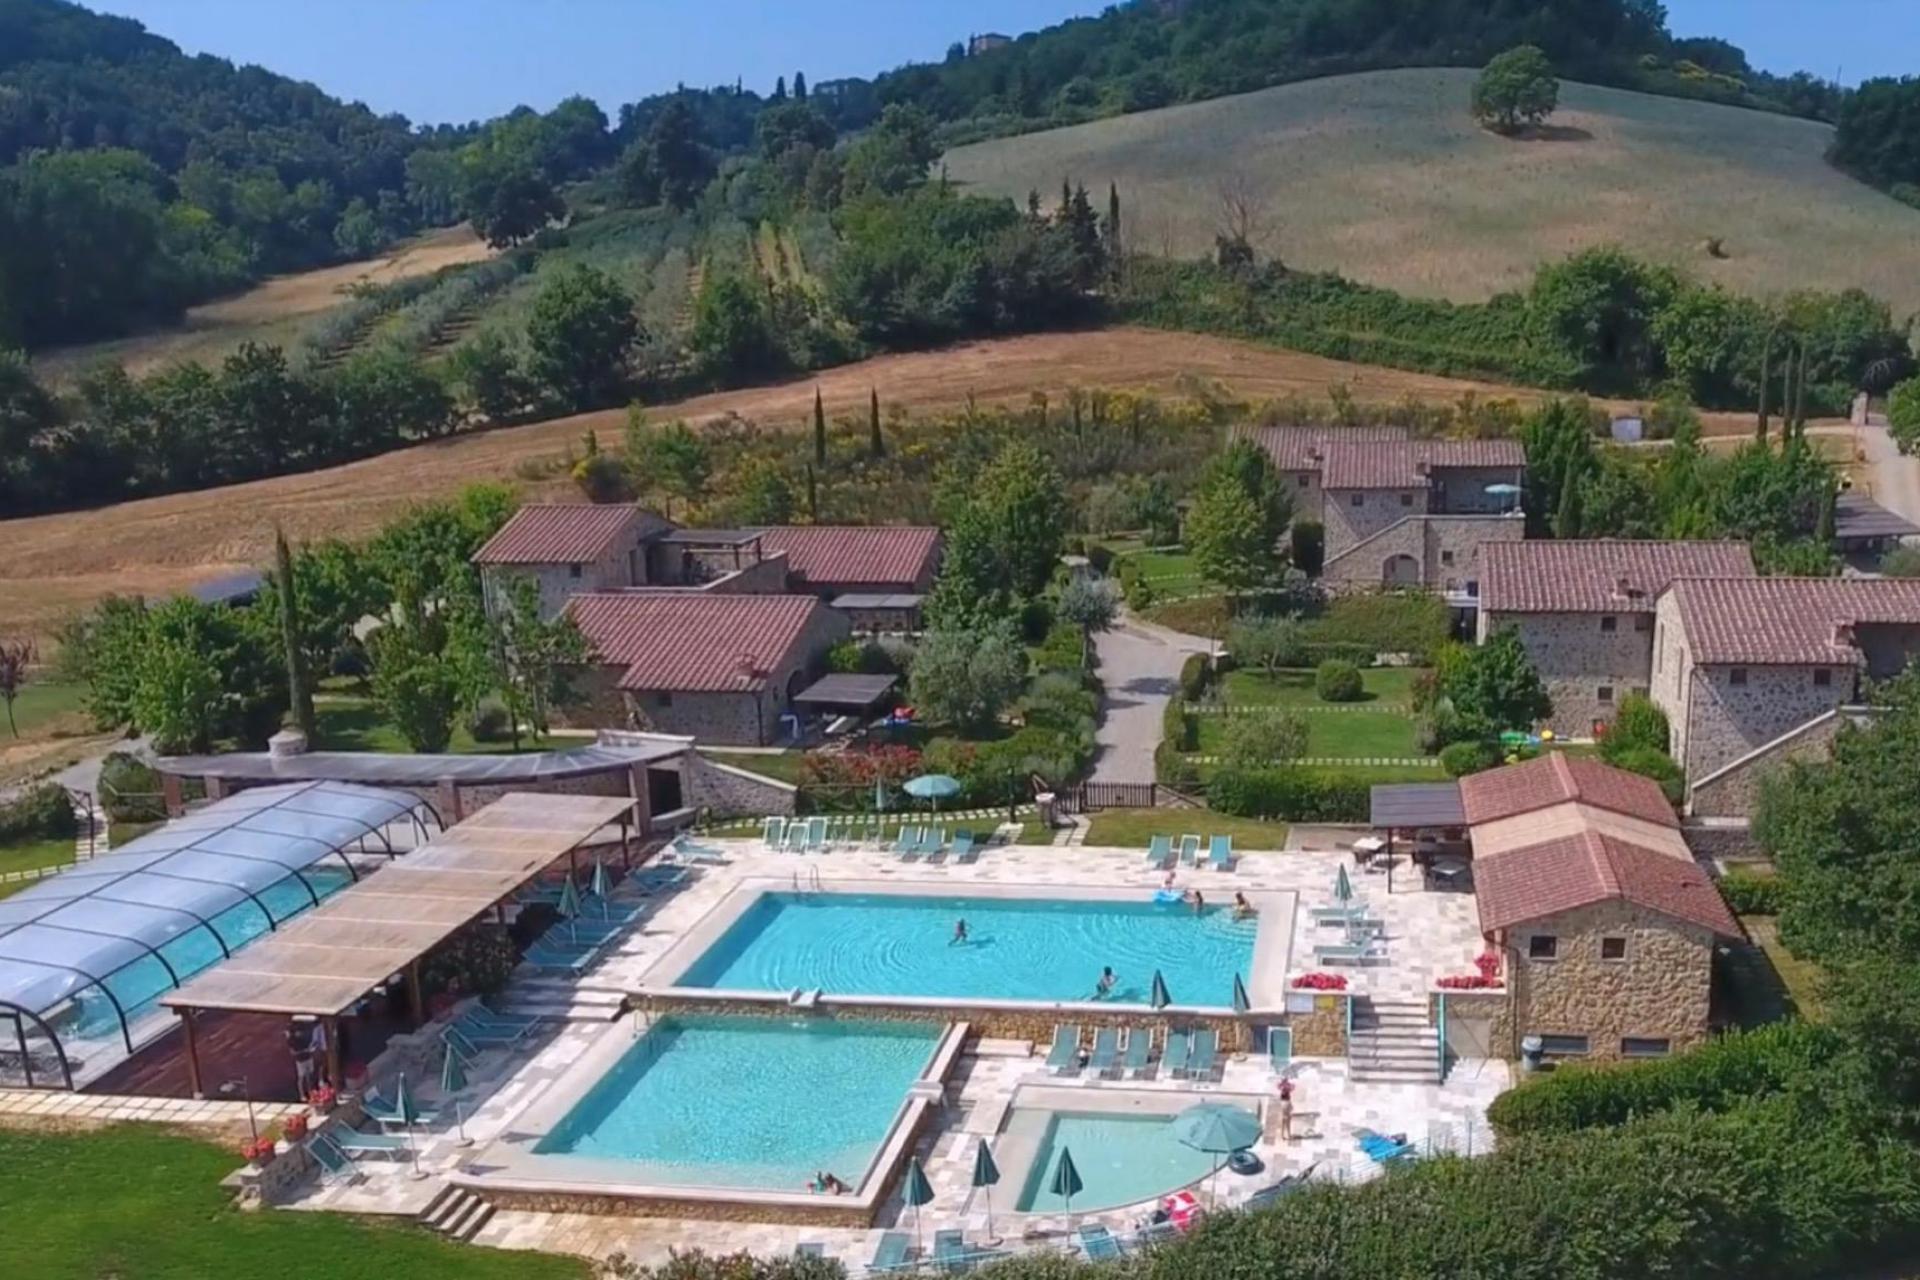 Toscaans country resort met 4 prachtige zwembaden